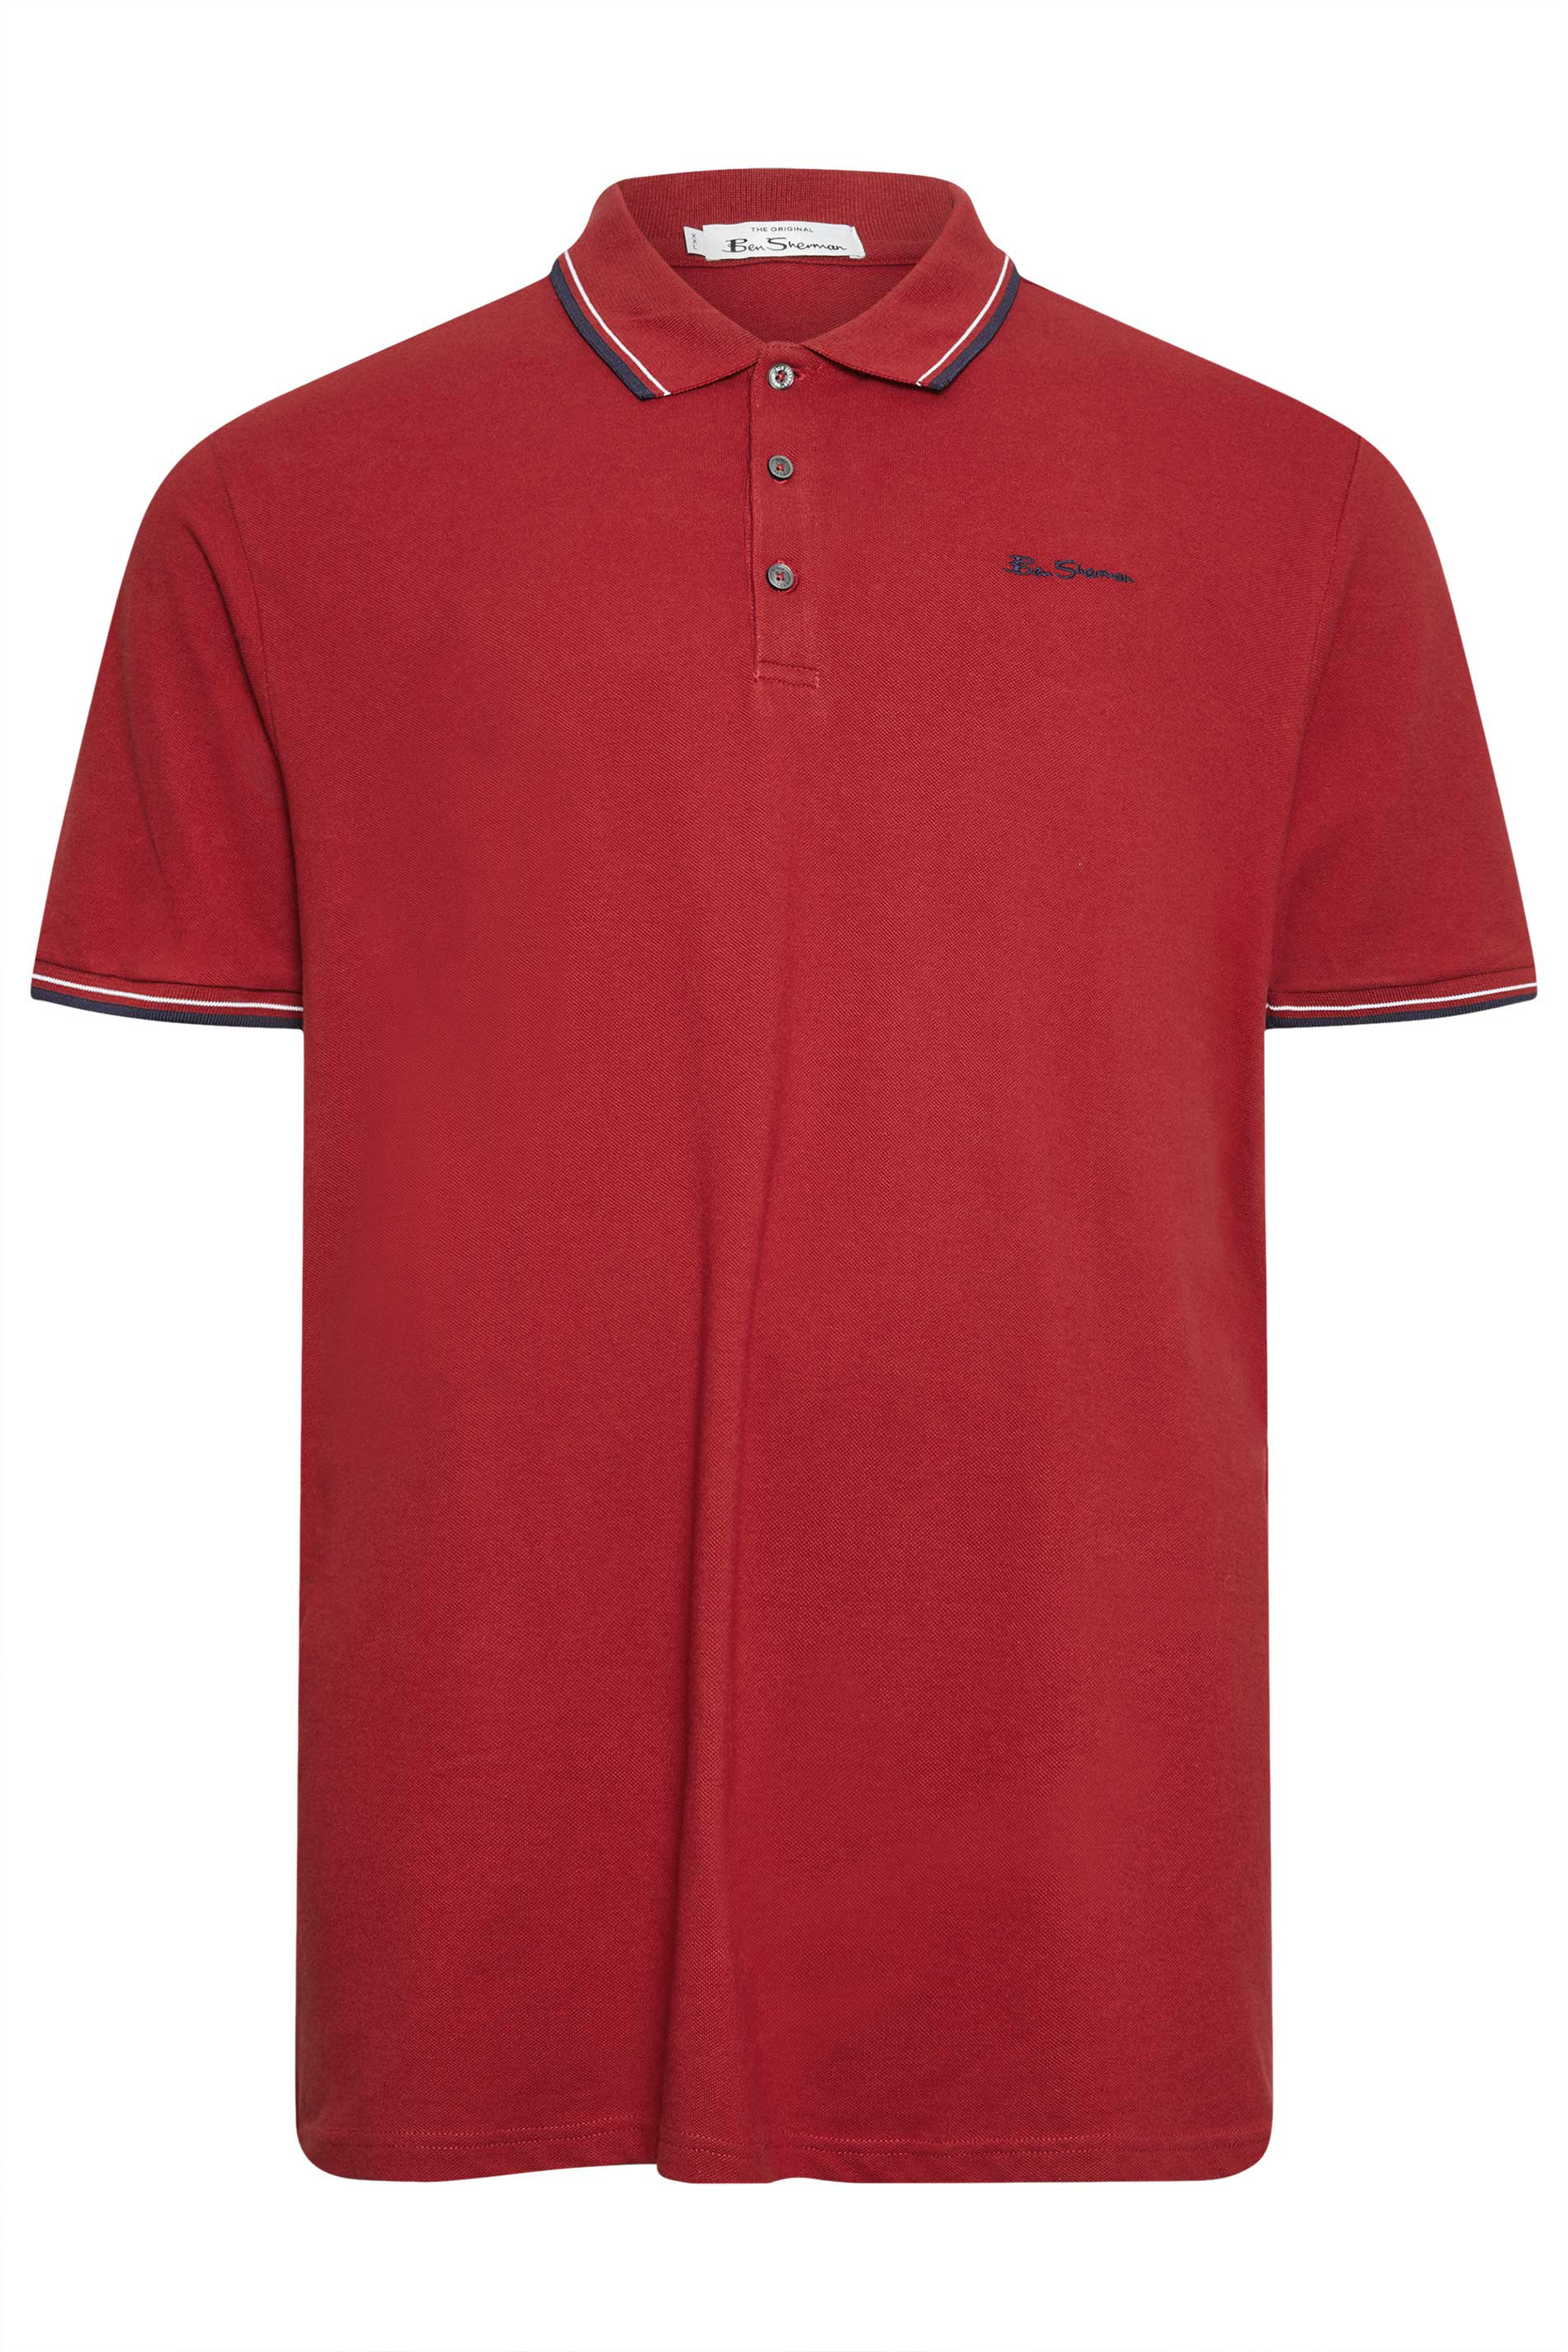 BEN SHERMAN Red Tipped Polo Shirt | BadRhino 2